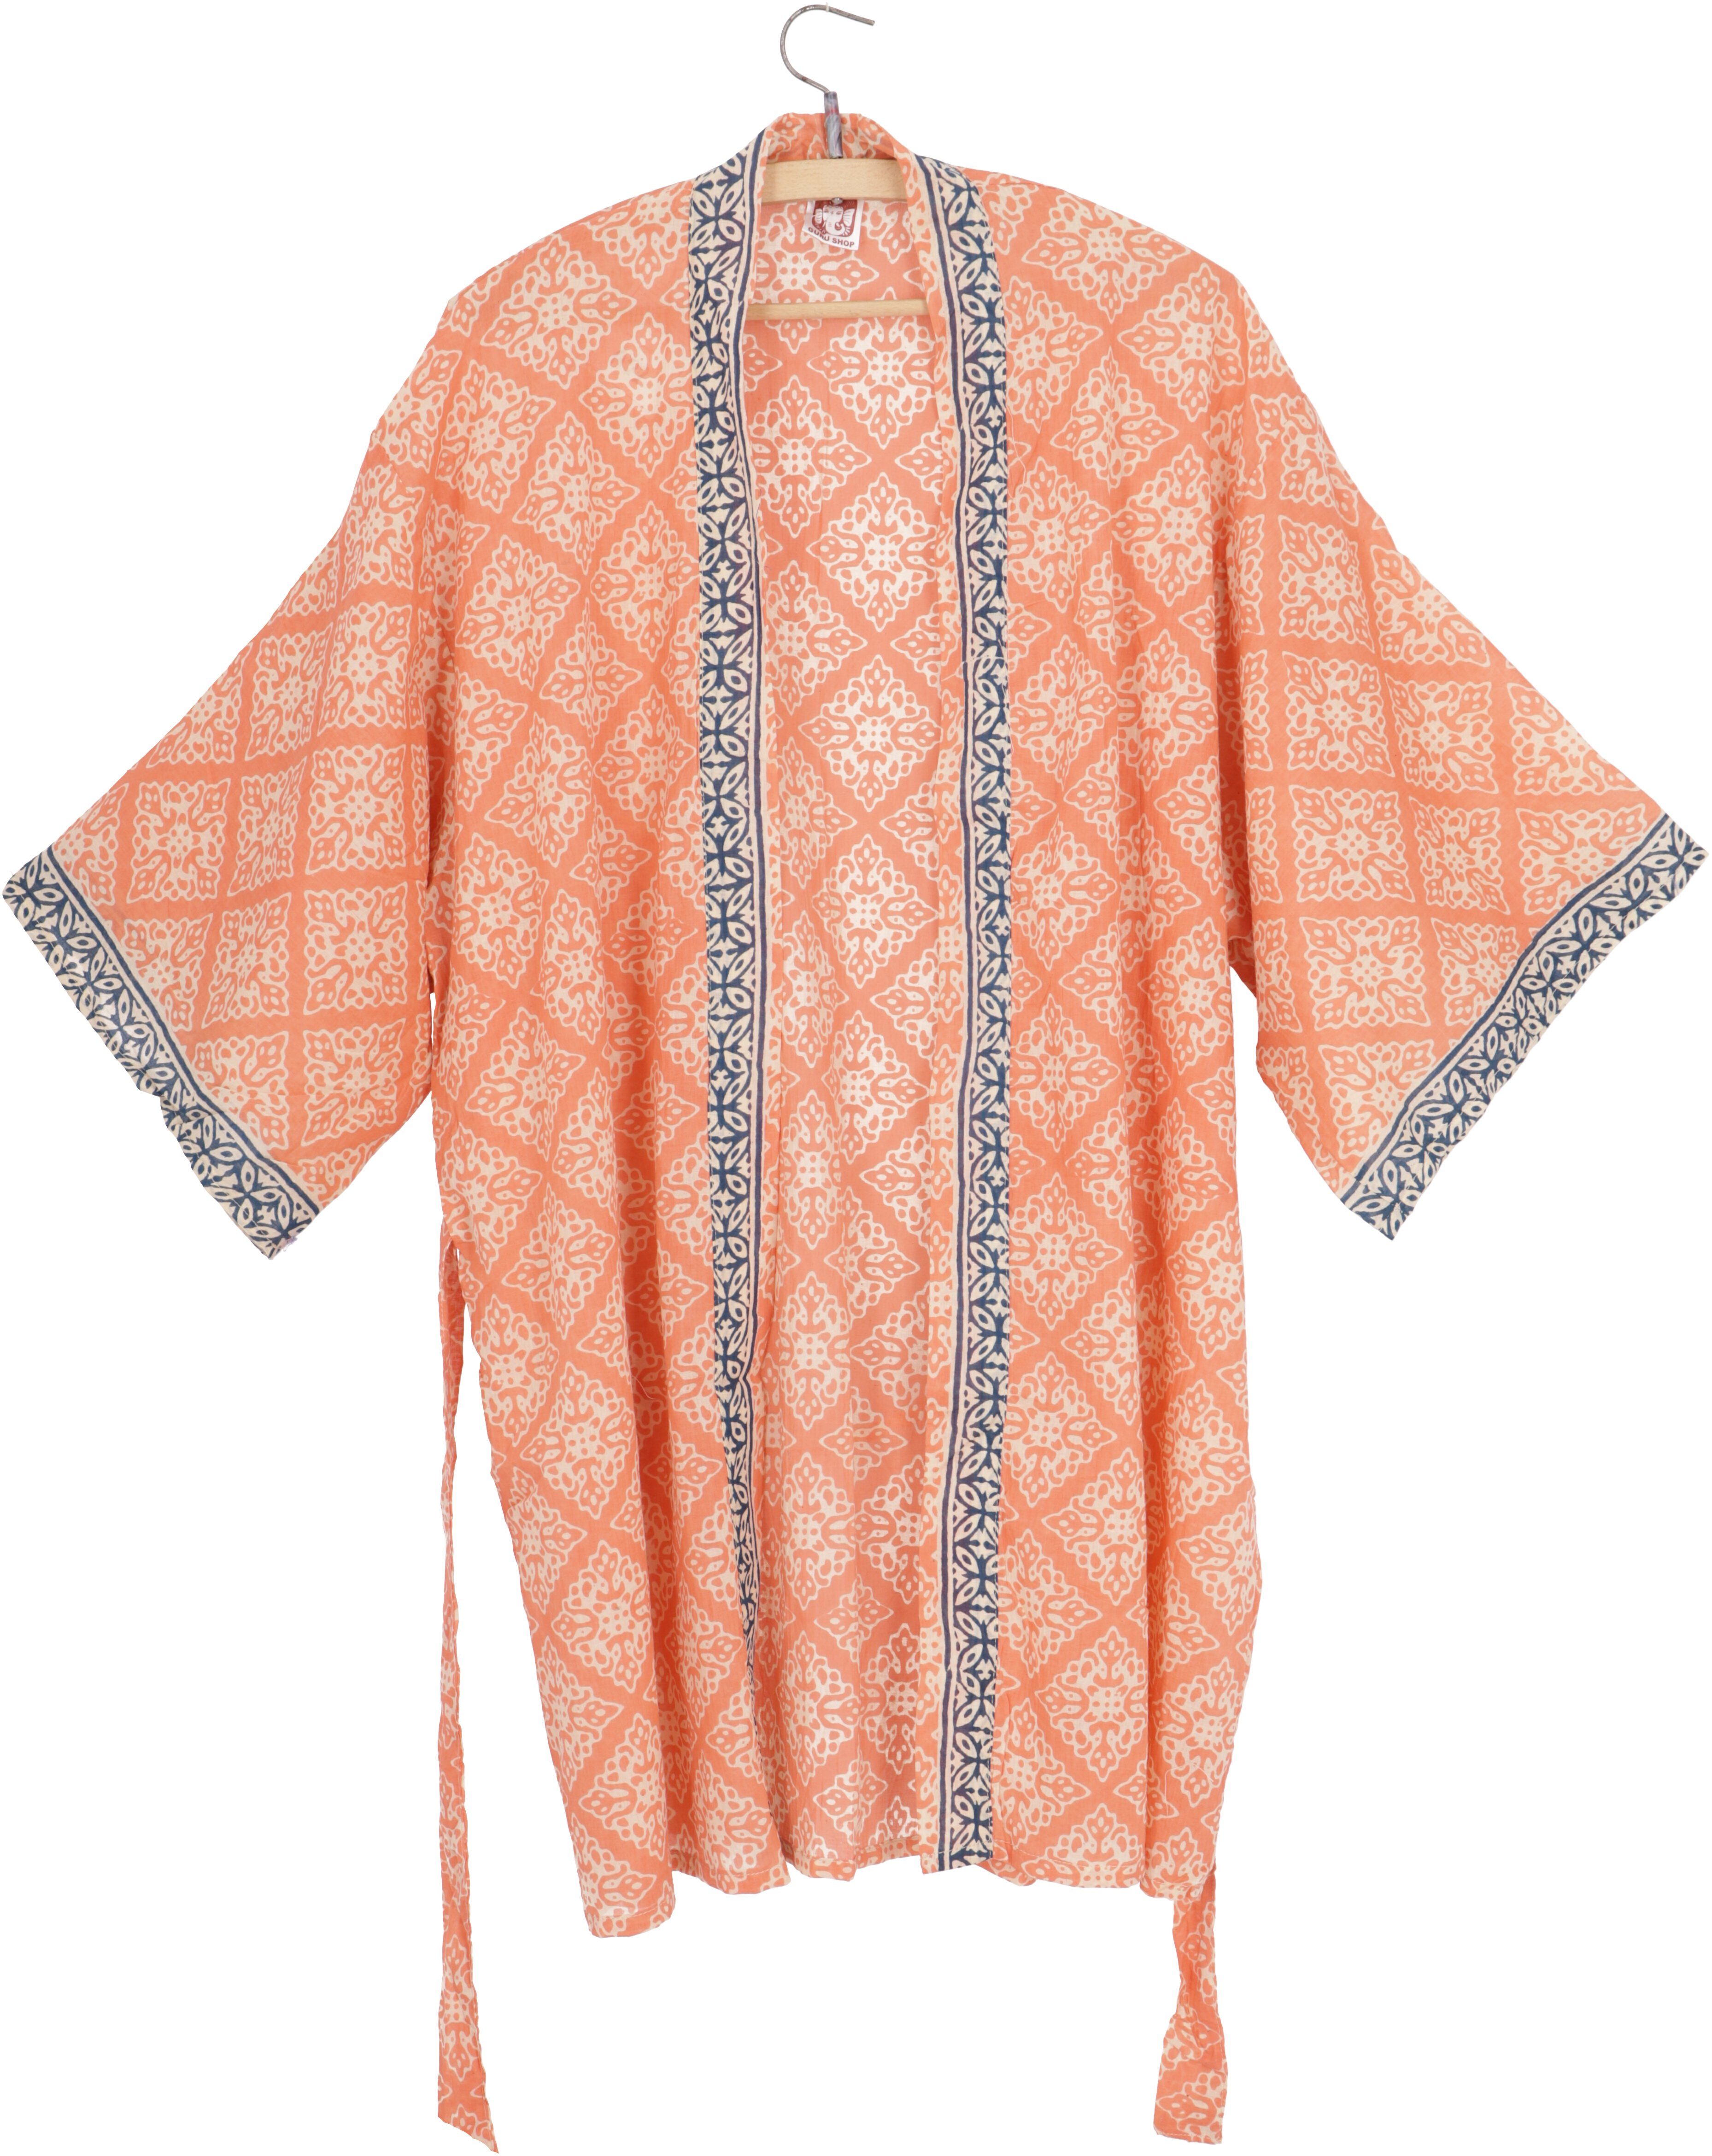 Kimonokleid, Kimono Kimono knielanger apricot Bekleidung Boho alternative Kimono, Guru-Shop aus..,